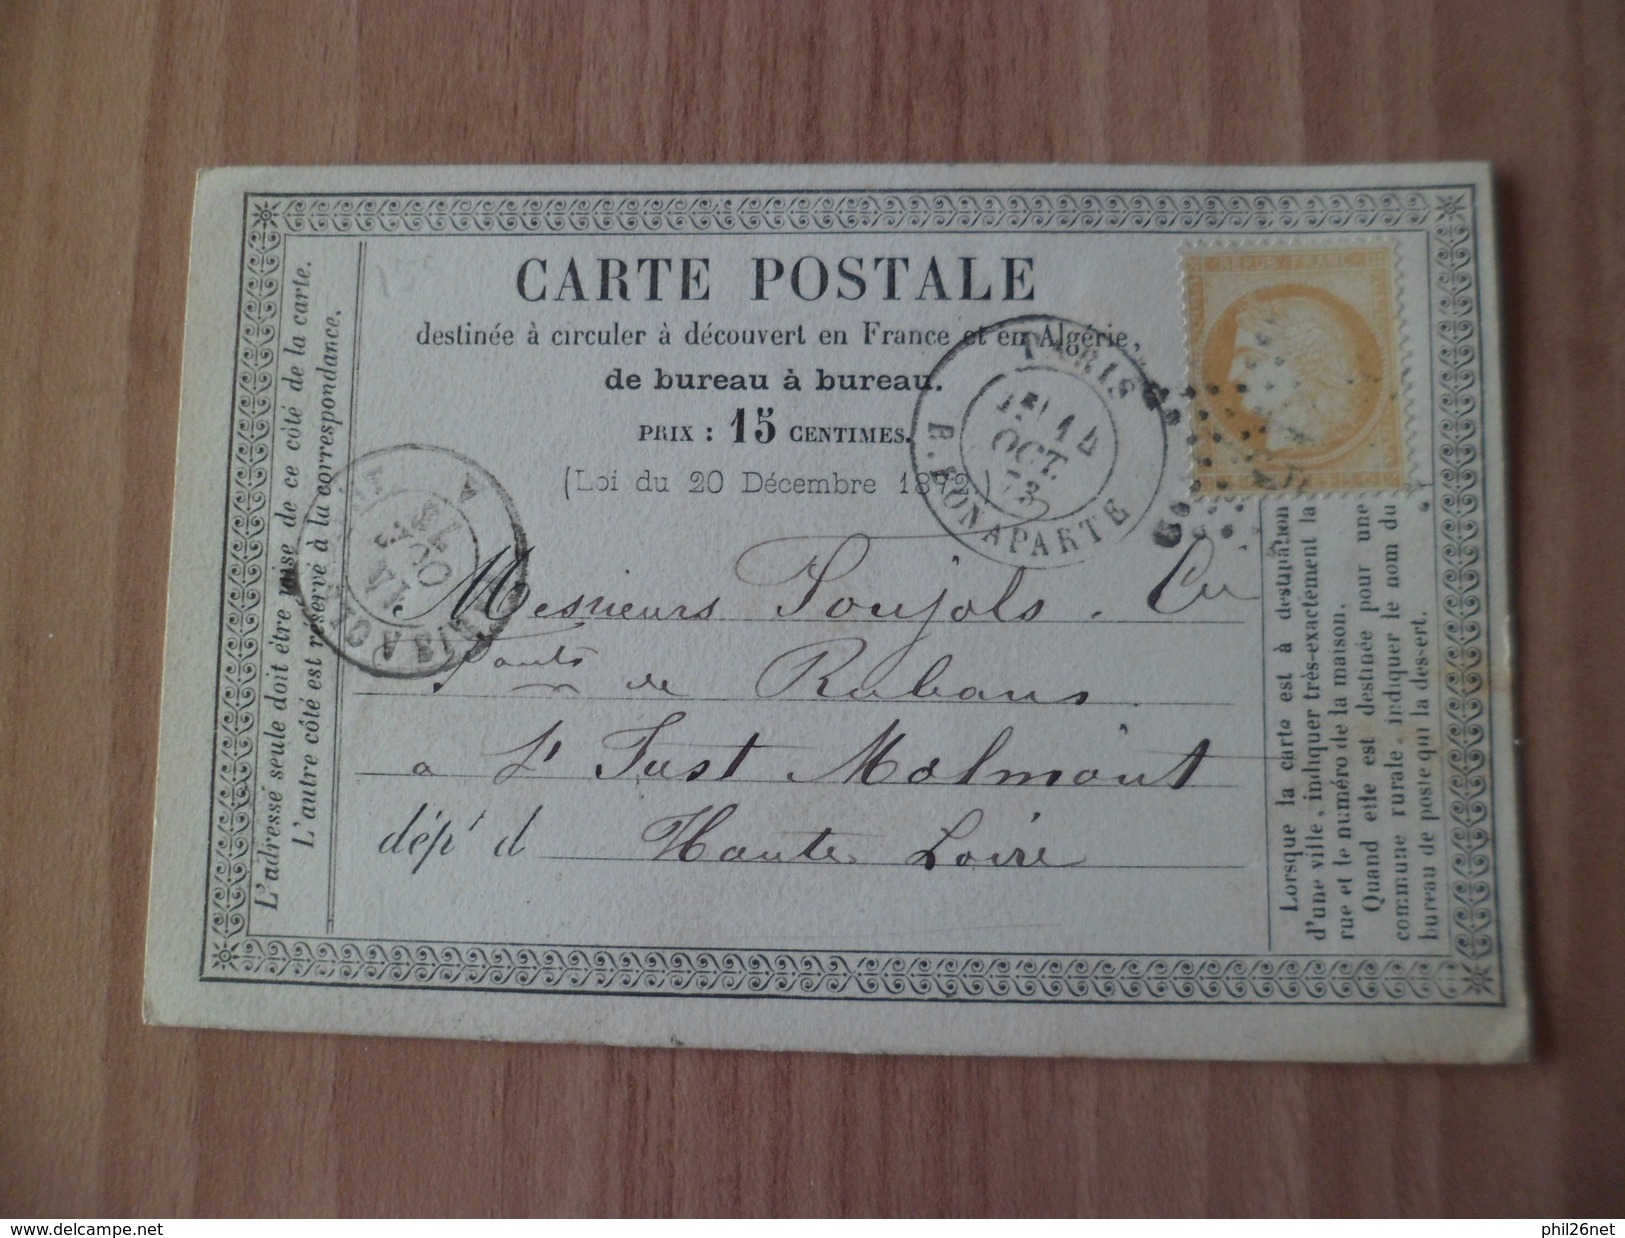 Carte Postale Le N°59 TB Paris Le 14/10/1873 Pour Saint Didier La Séauve 15/10/1873 Via  Paris à Clermont 14/10/1873  TB - 1871-1875 Ceres